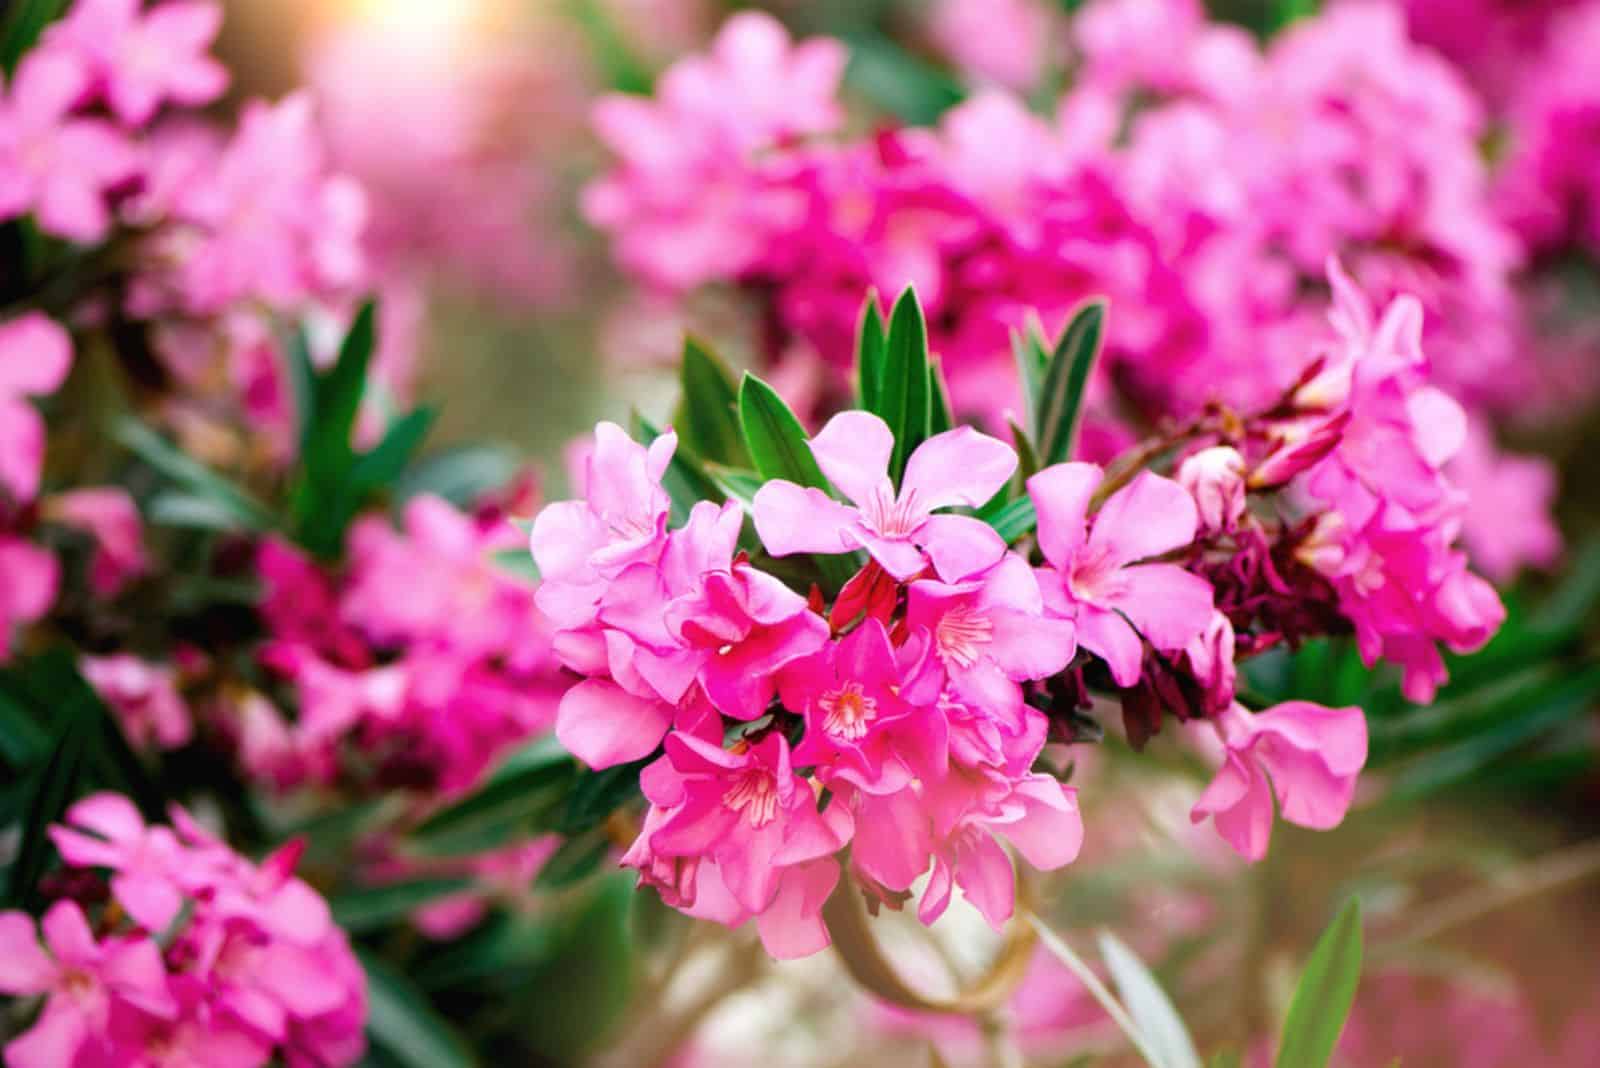 Blooming pink oleander flowers